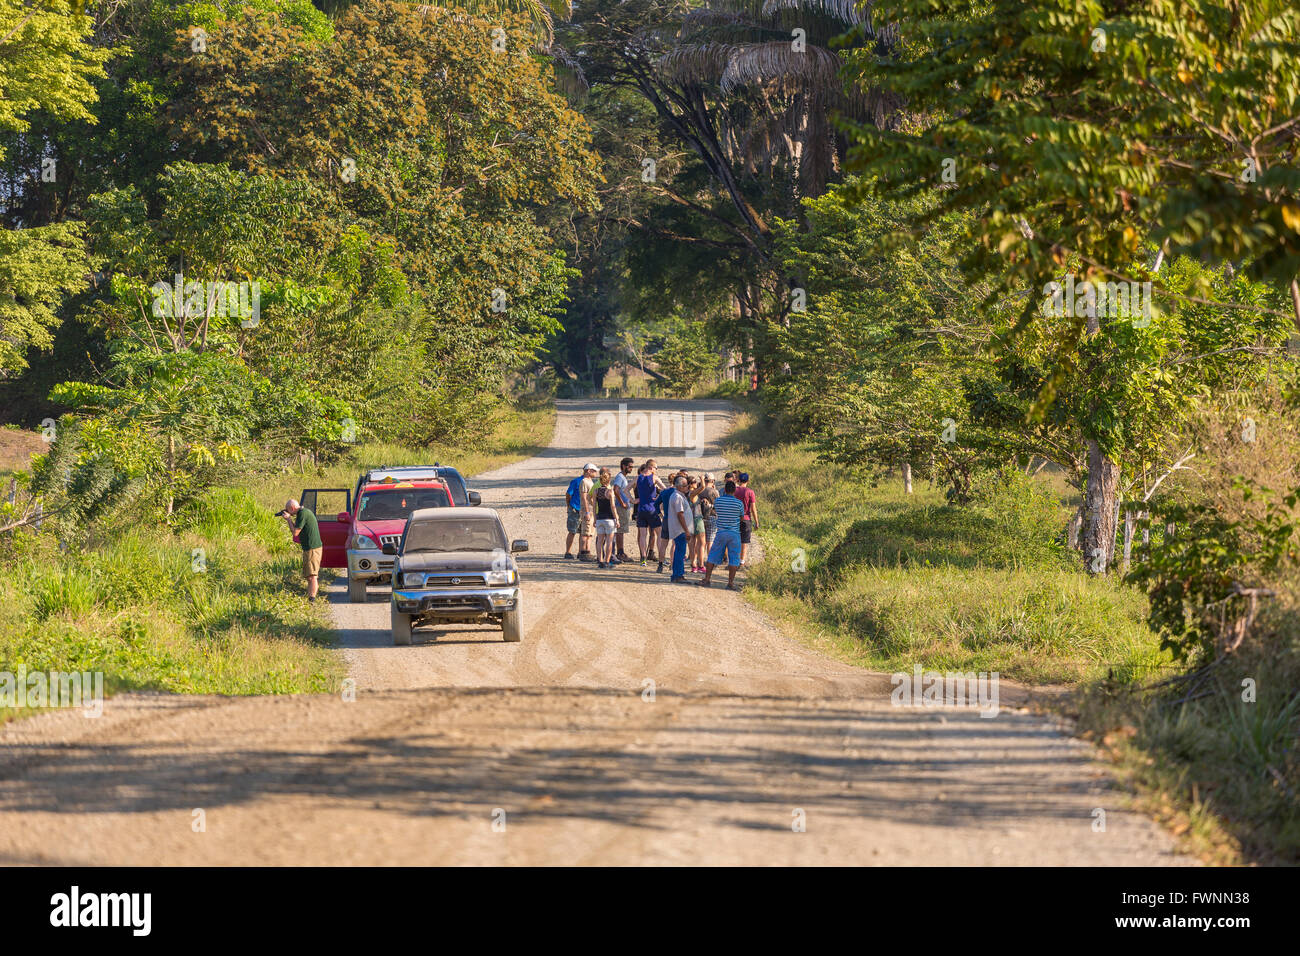 Péninsule de Osa, COSTA RICA - éco-touristes s'arrêter les voitures sur route de terre pour observer la faune. Banque D'Images